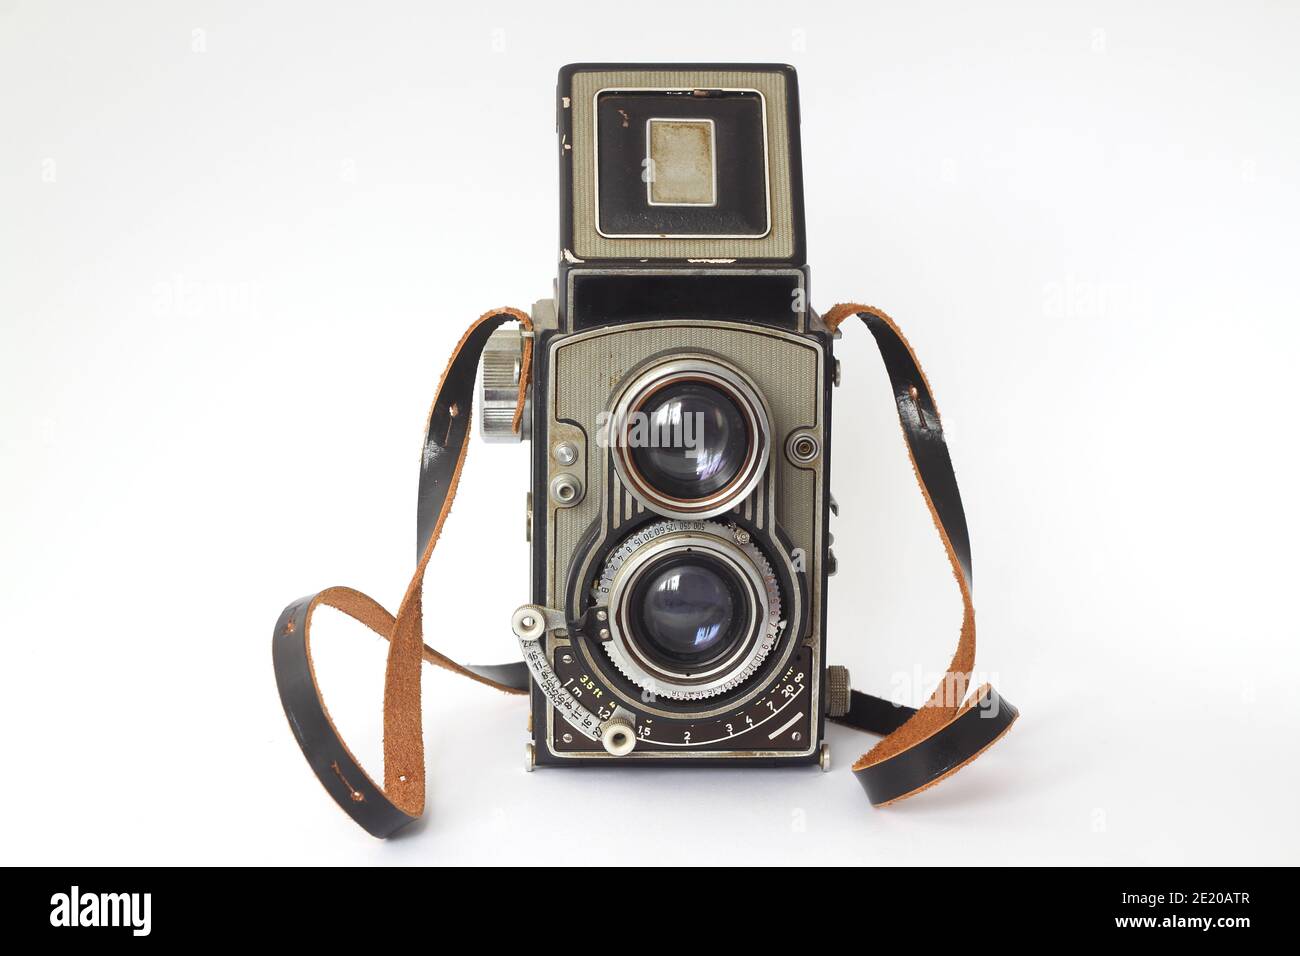 Vintage Spiegelreflexkamera mit offenem Sucher. Vorderansicht. Realistisches Retro-Design der Mittelformat-Kamera. Stockfoto